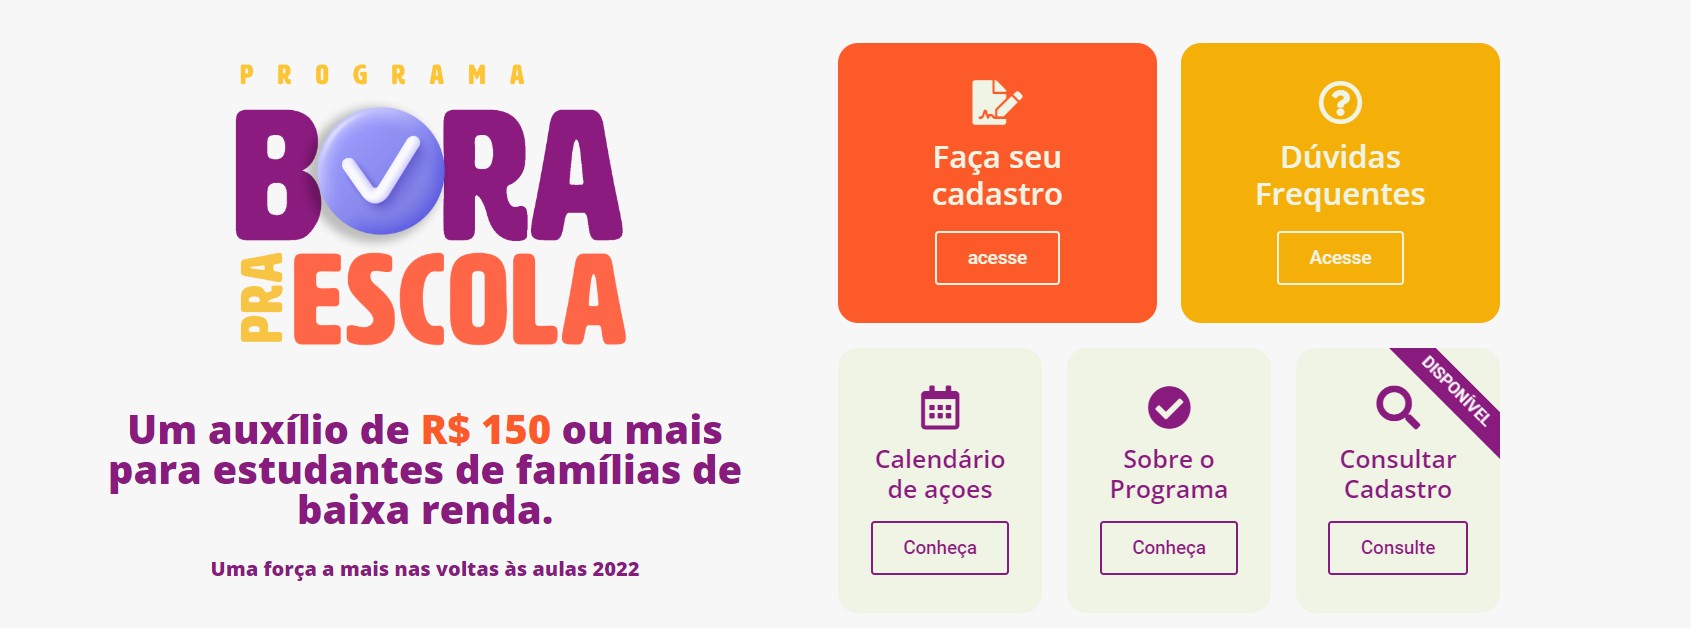 Prefeitura de Belém convoca estudantes para cadastro a auxílio de até R$ 500; saiba como participar